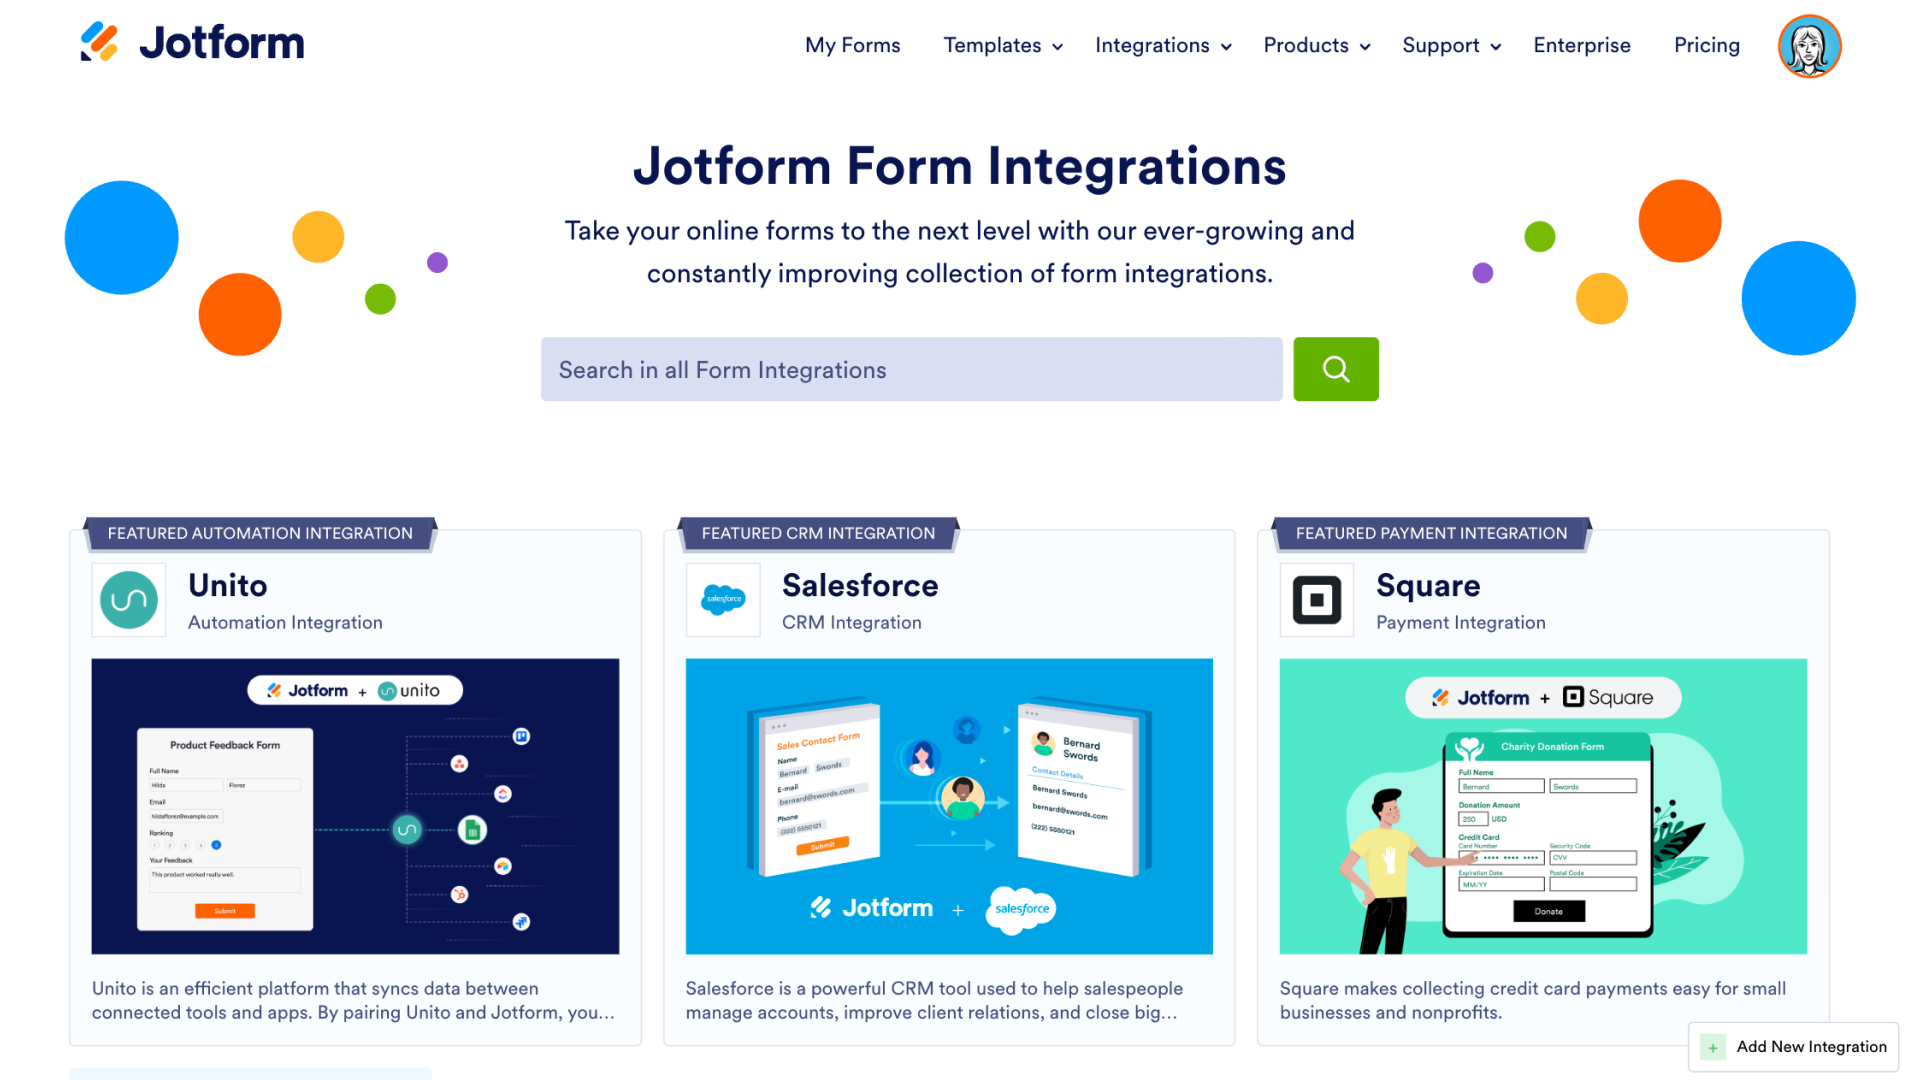 Jotform Form Integrations